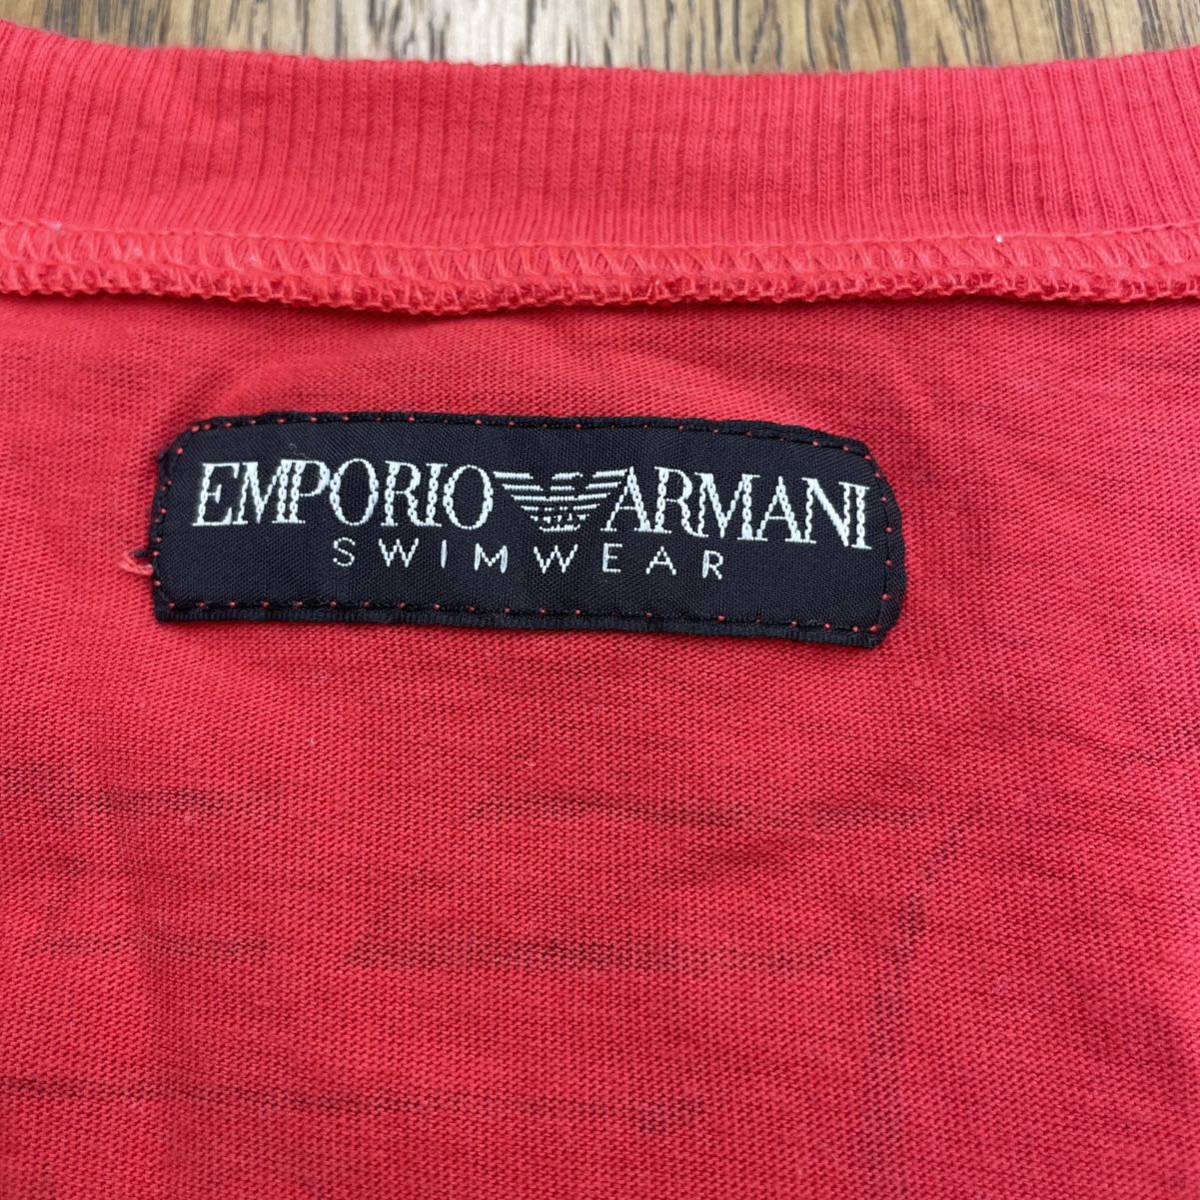 EMPORIO ARMANI SWIMWEAR Tシャツ 半袖Tシャツ エンポリオアルマーニ VネックTシャツ_画像5